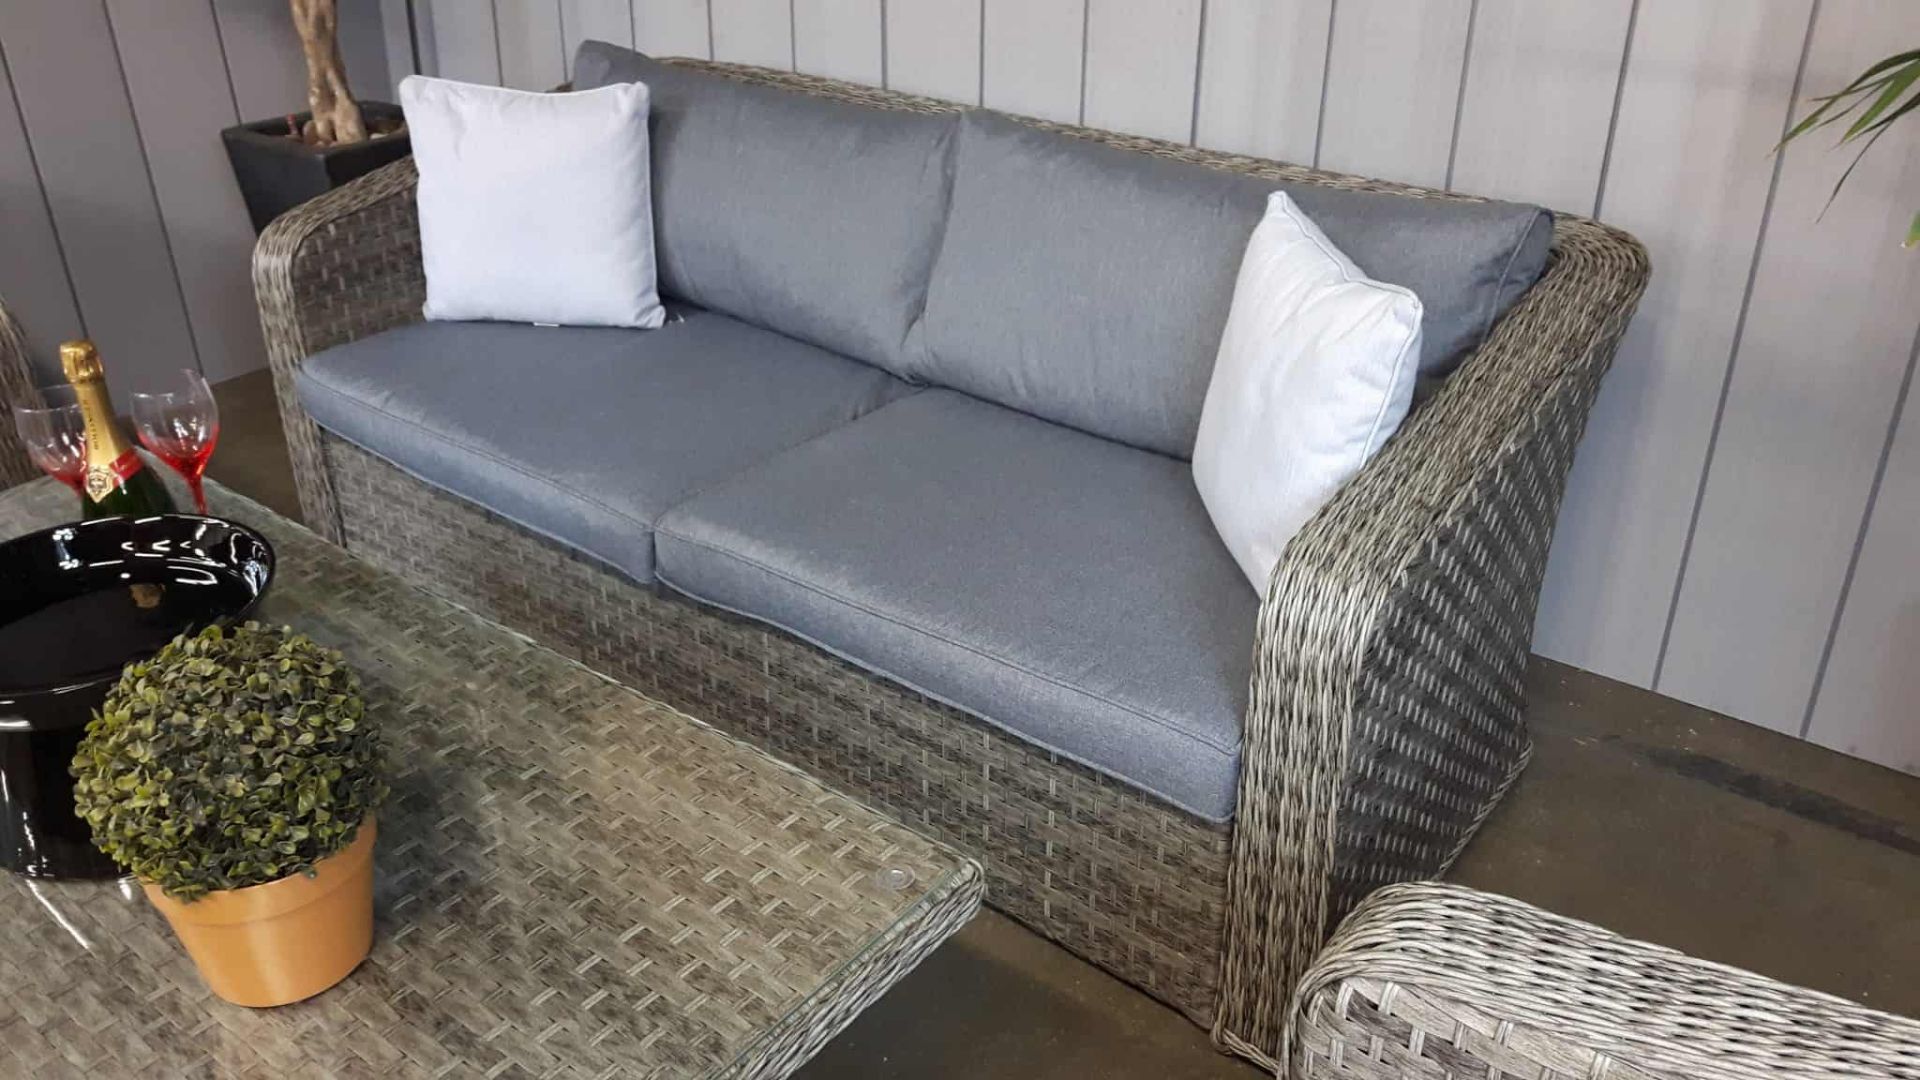 Windsor Executive Sofa Set Fully Welded Aluminium - Image 3 of 5